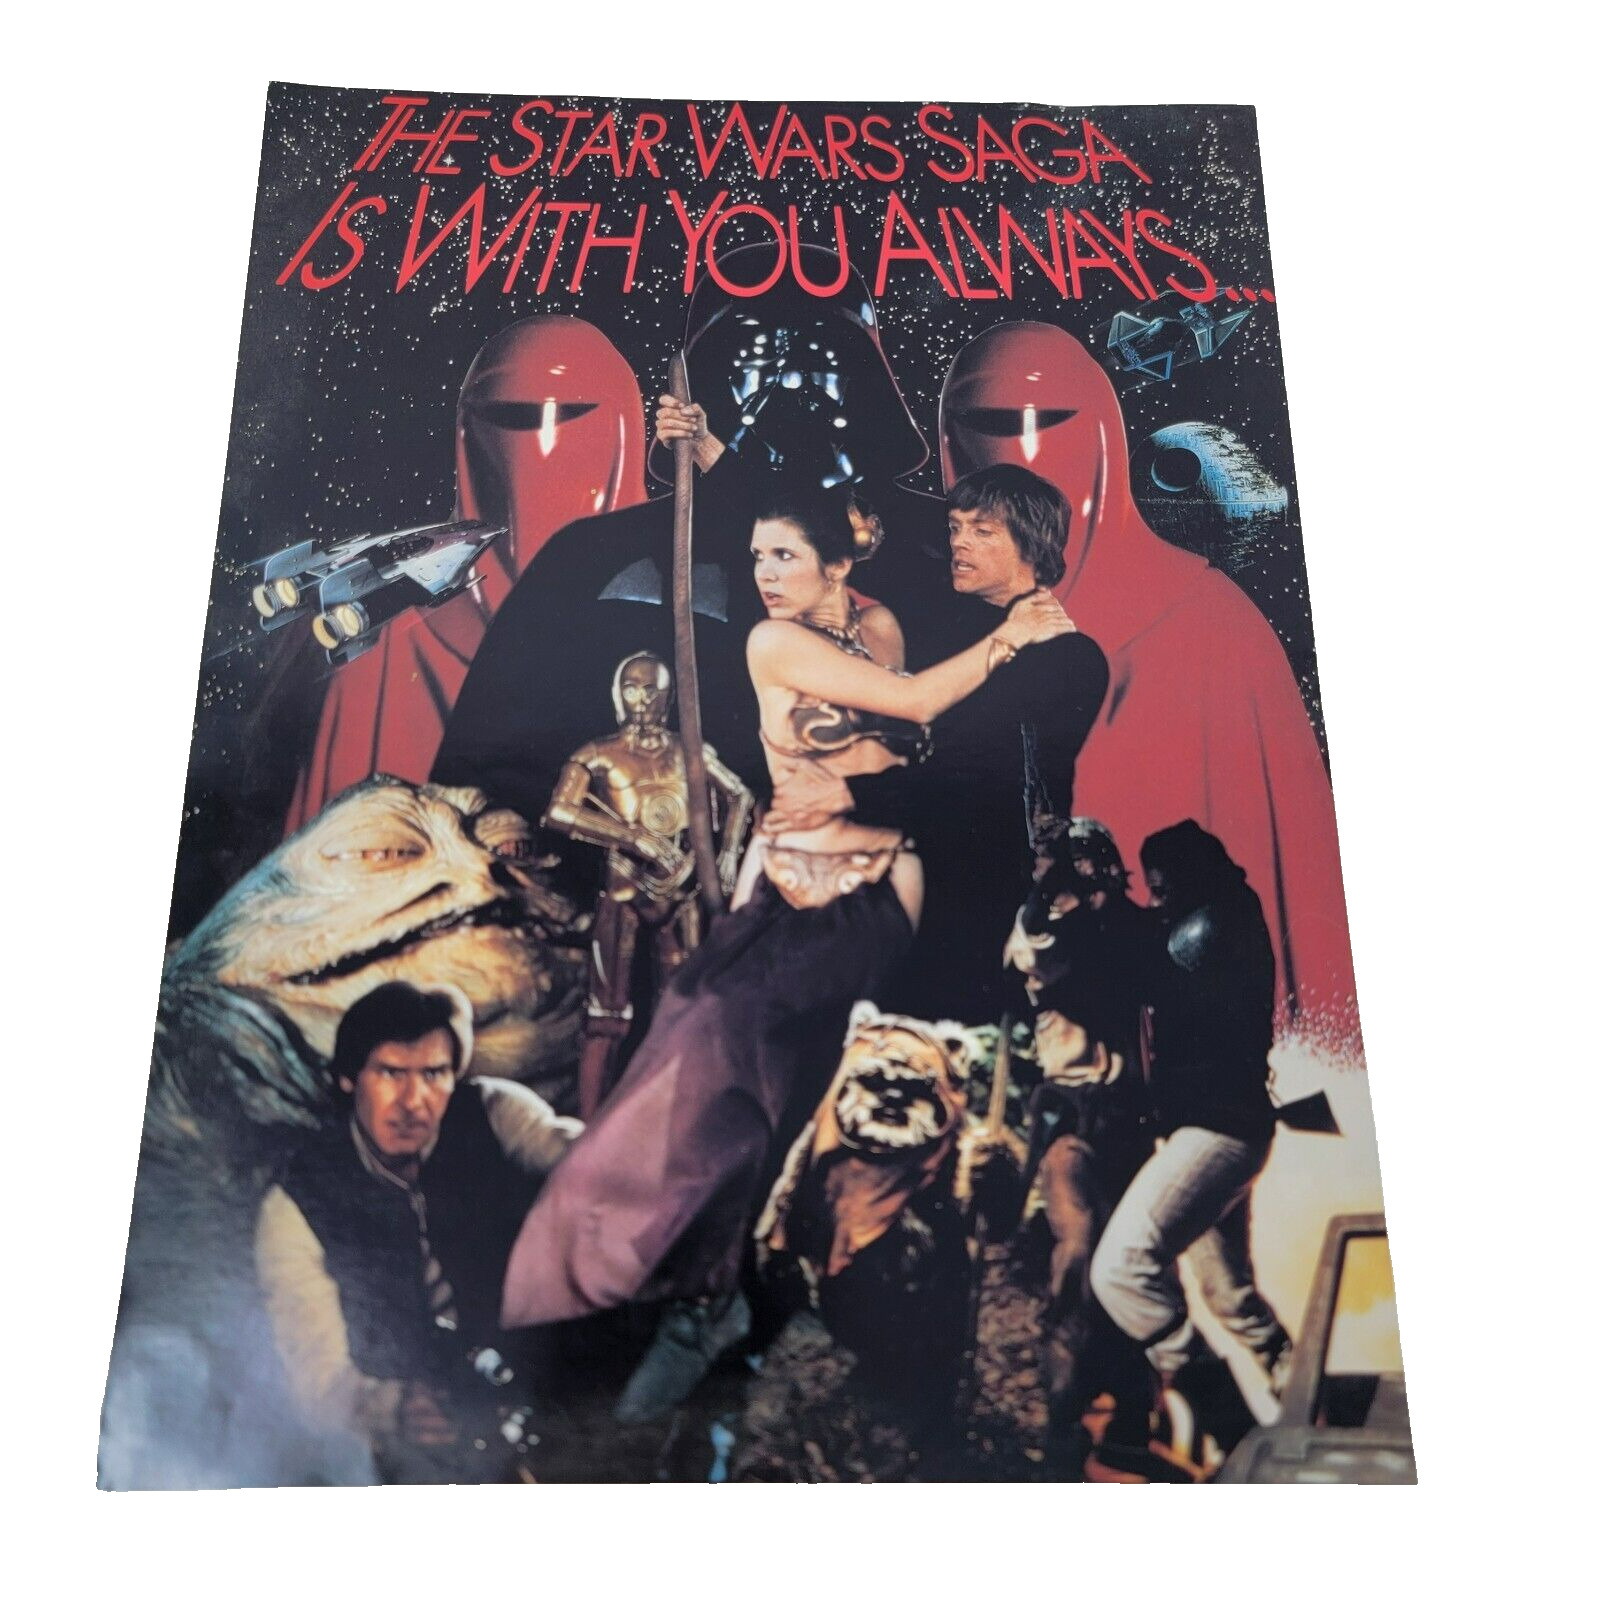 Star Wars ROTJ Fan Club Application Form 1983 Vintage Original Unused